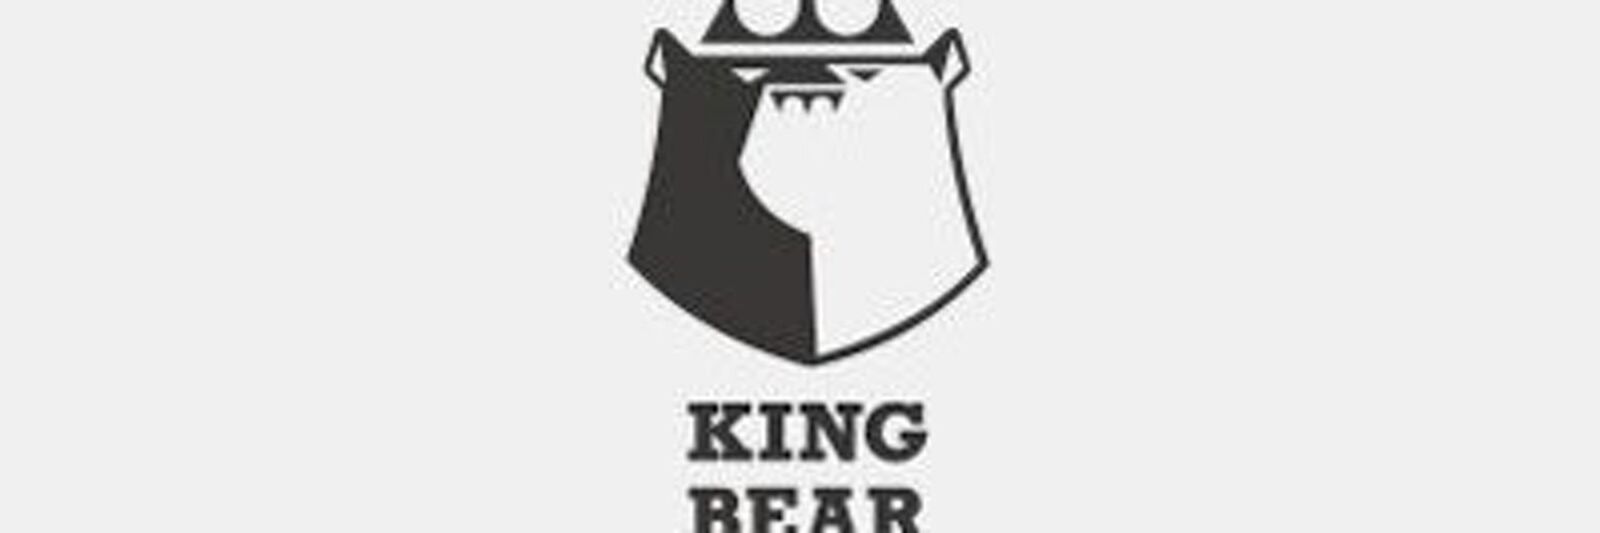 See King bear bbk profile